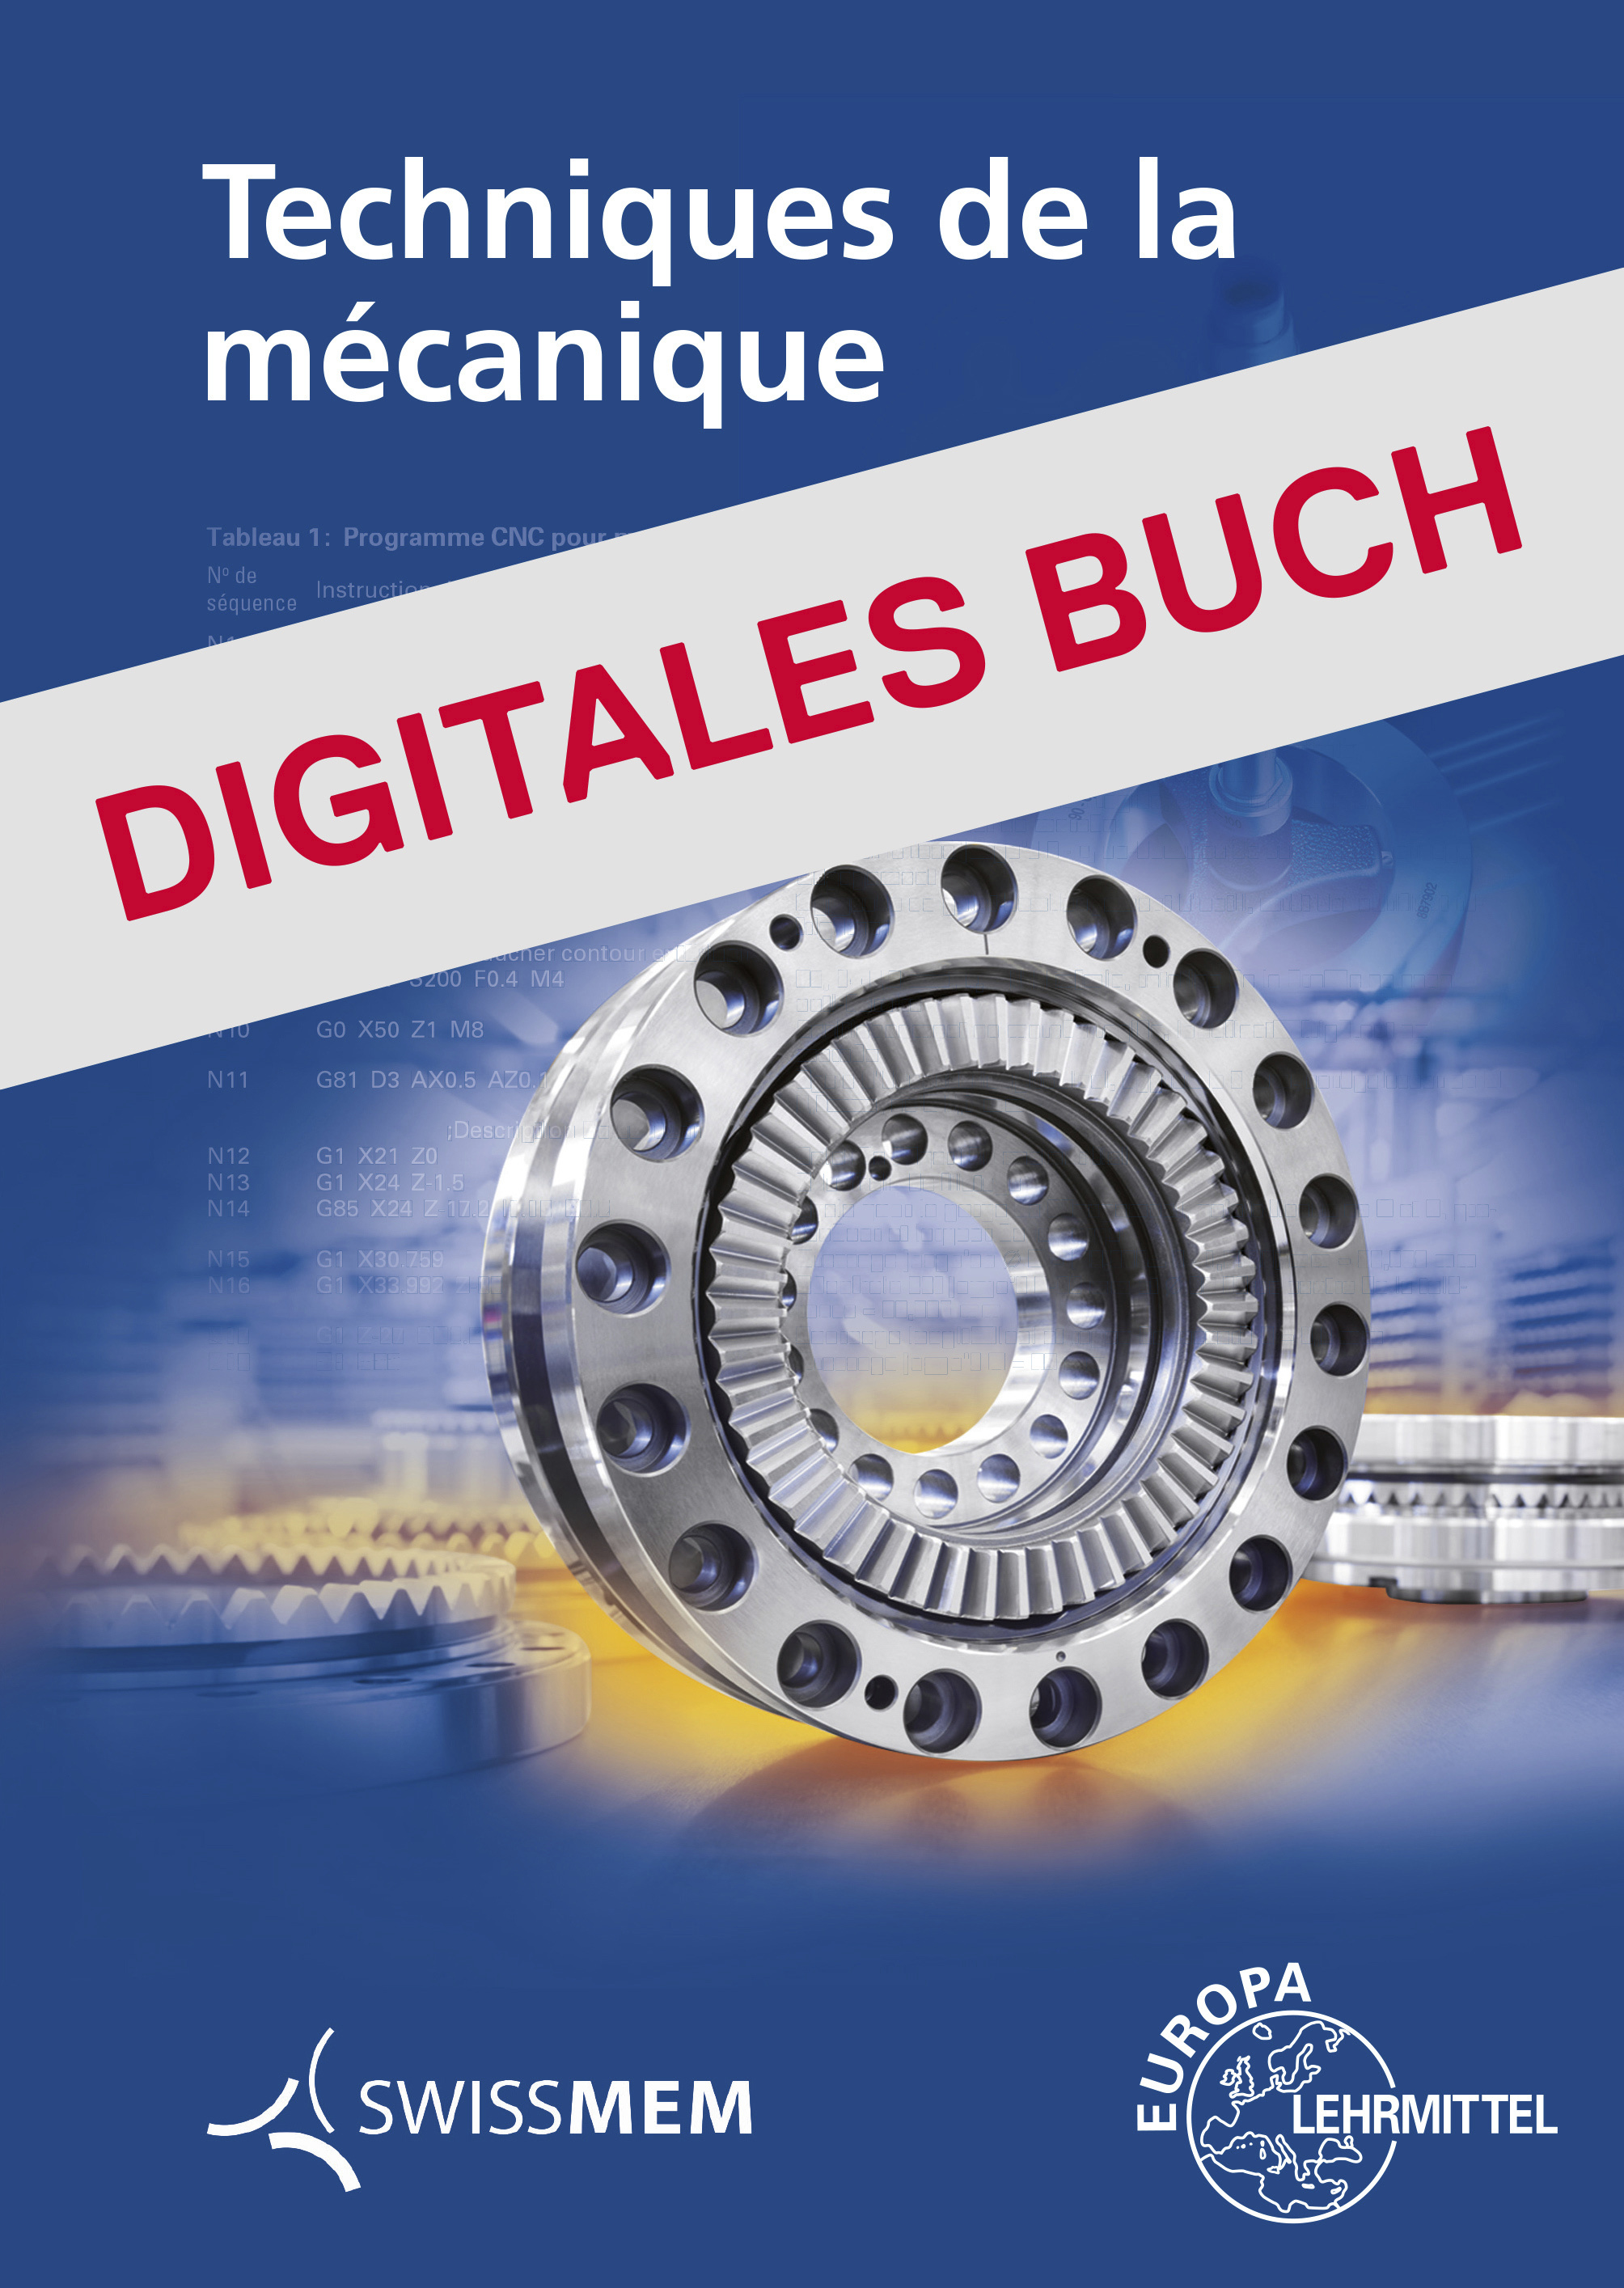 Techniques de la mécanique - Digitales Buch